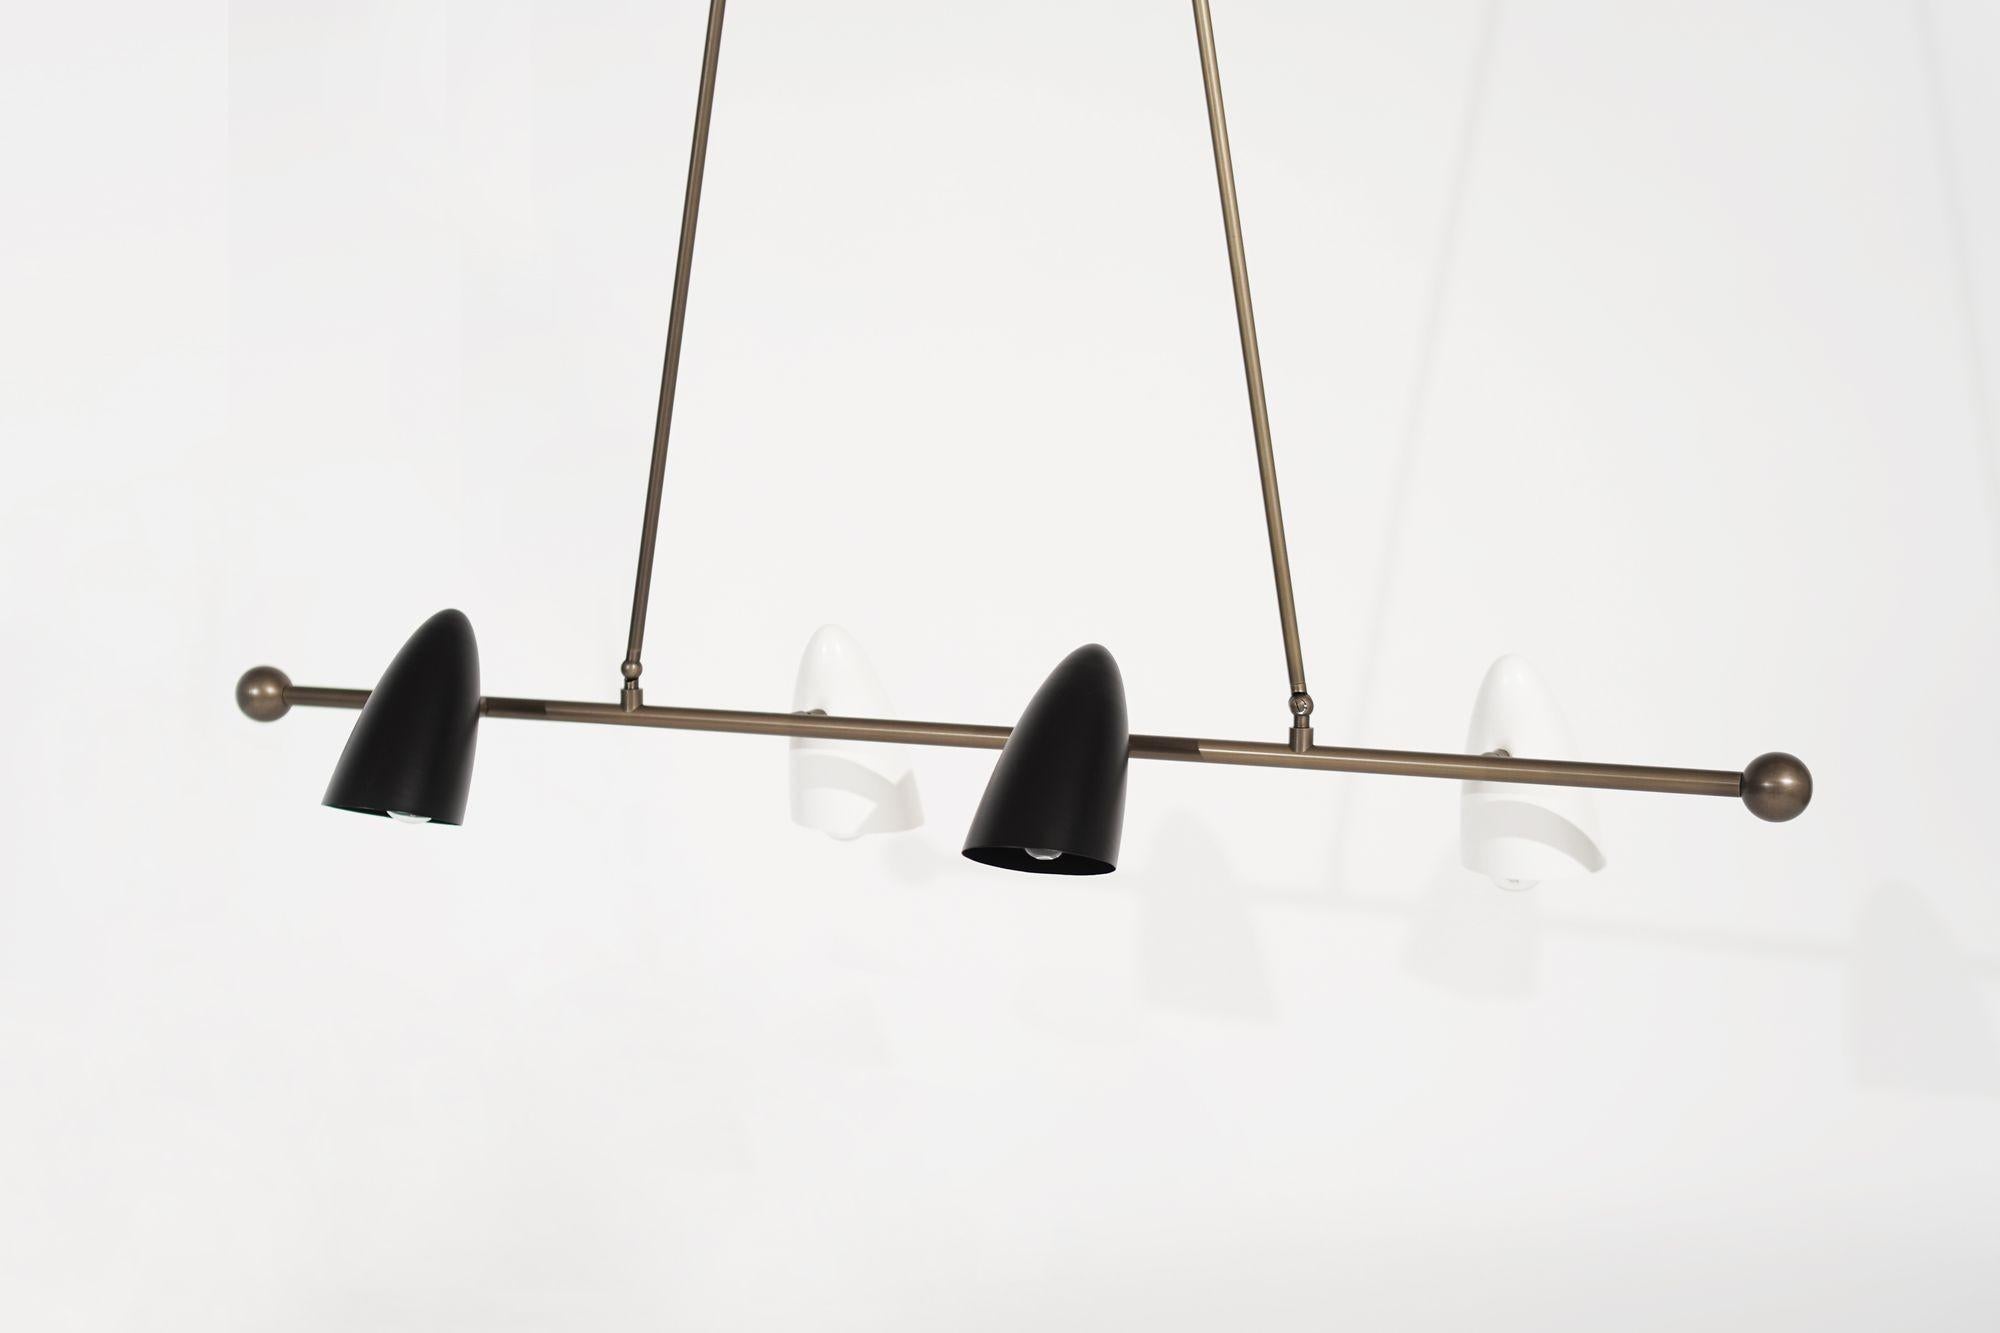 Le plafonnier CALYX, une pièce ludique de sculpture fonctionnelle inspirée du tissu 